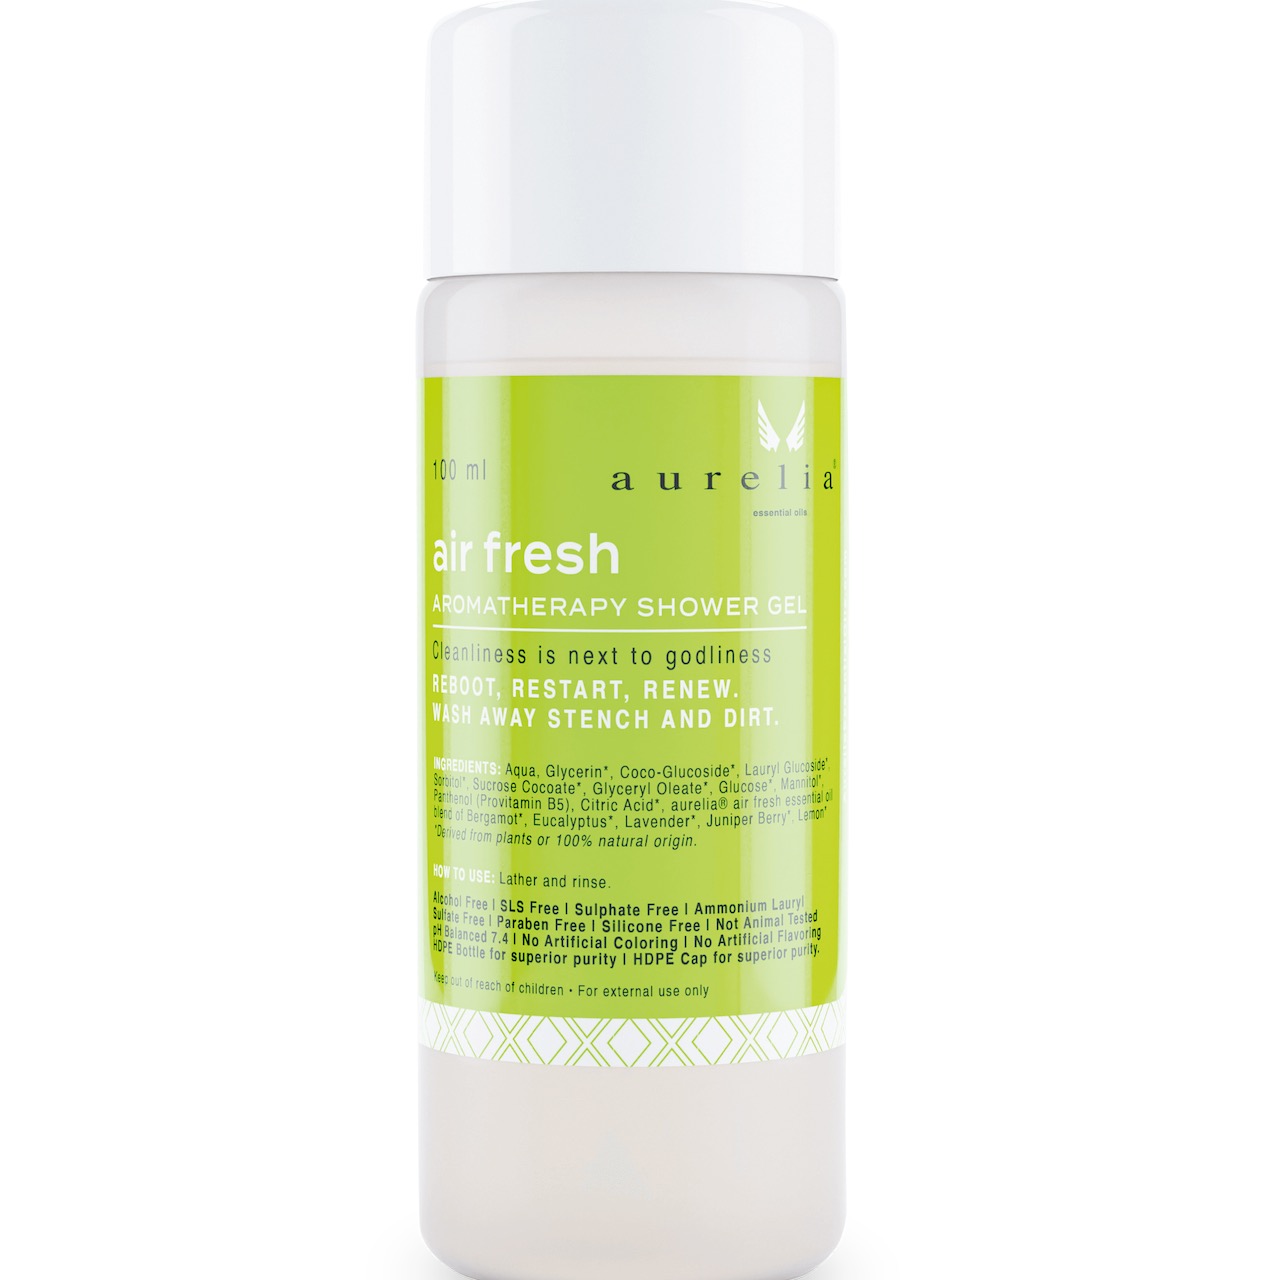 air fresh shower gel - Duschgel mit air fresh von aurelia essential oils